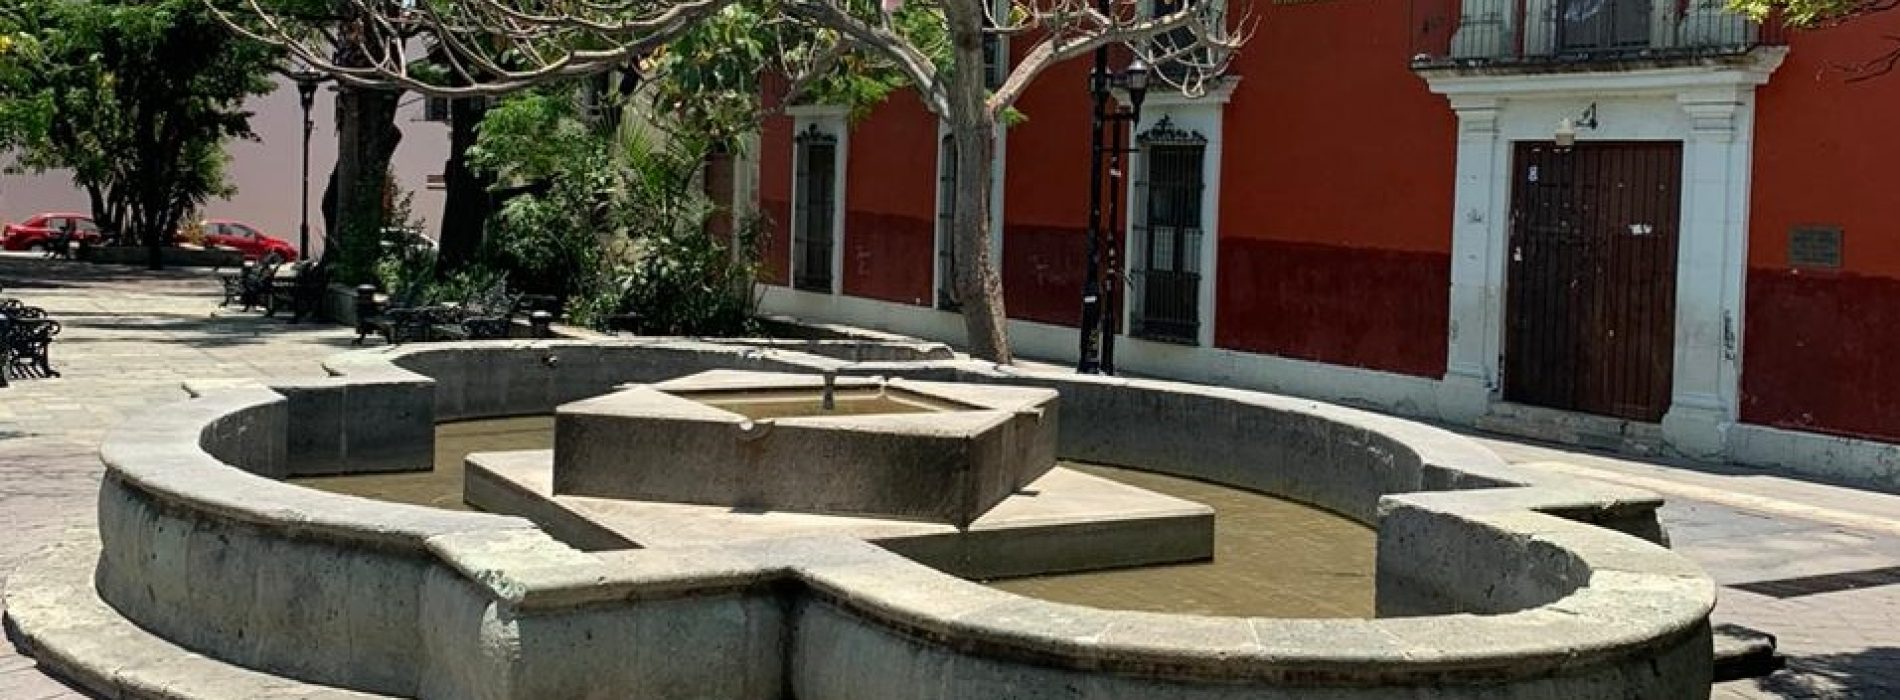 Suspende Ayuntamiento funcionamiento de fuentes de la ciudad de Oaxaca